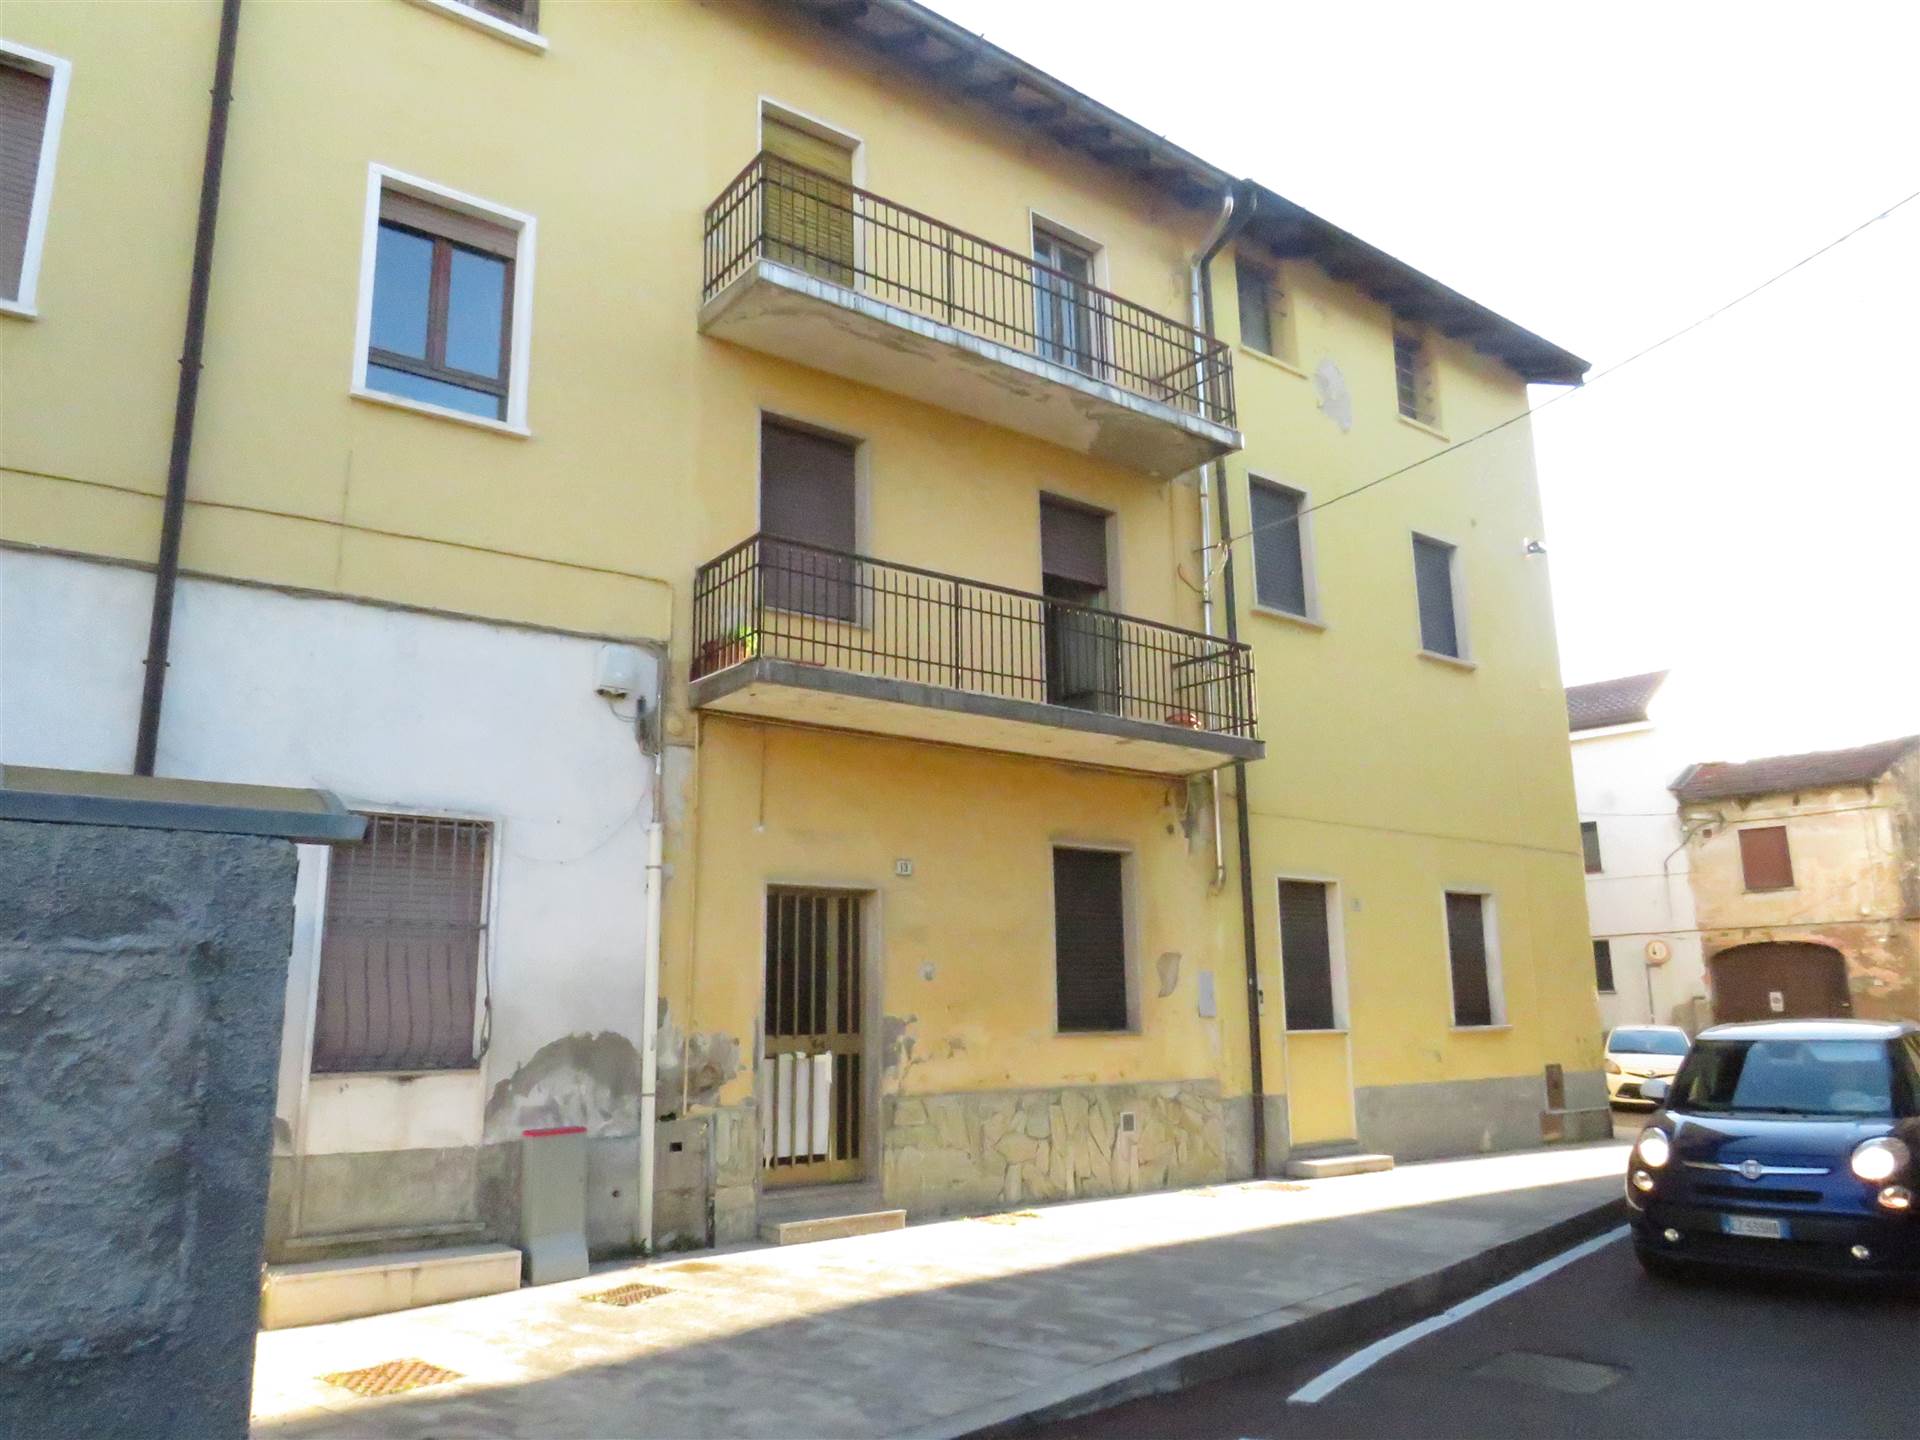 Vendita Casa Indipendente Casa/Villa Pogliano Milanese via fabio filzi 9 465300